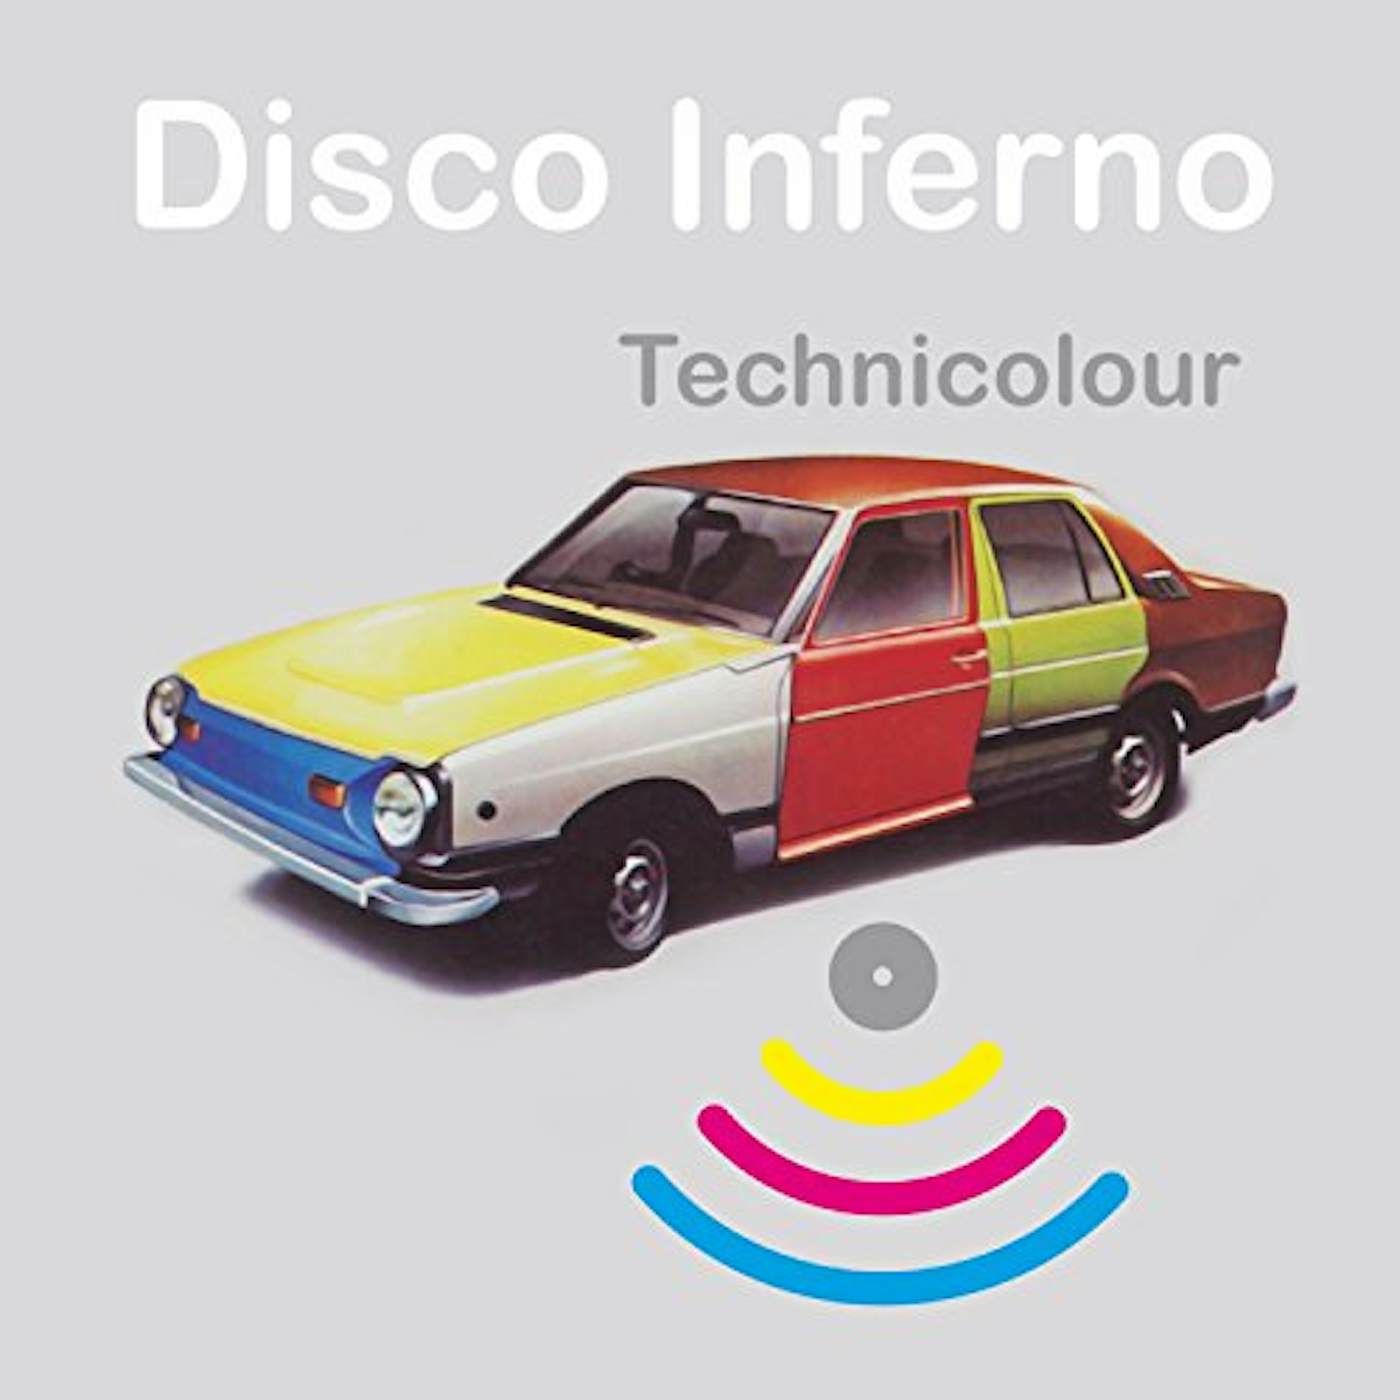 Disco Inferno Technicolour Vinyl Record